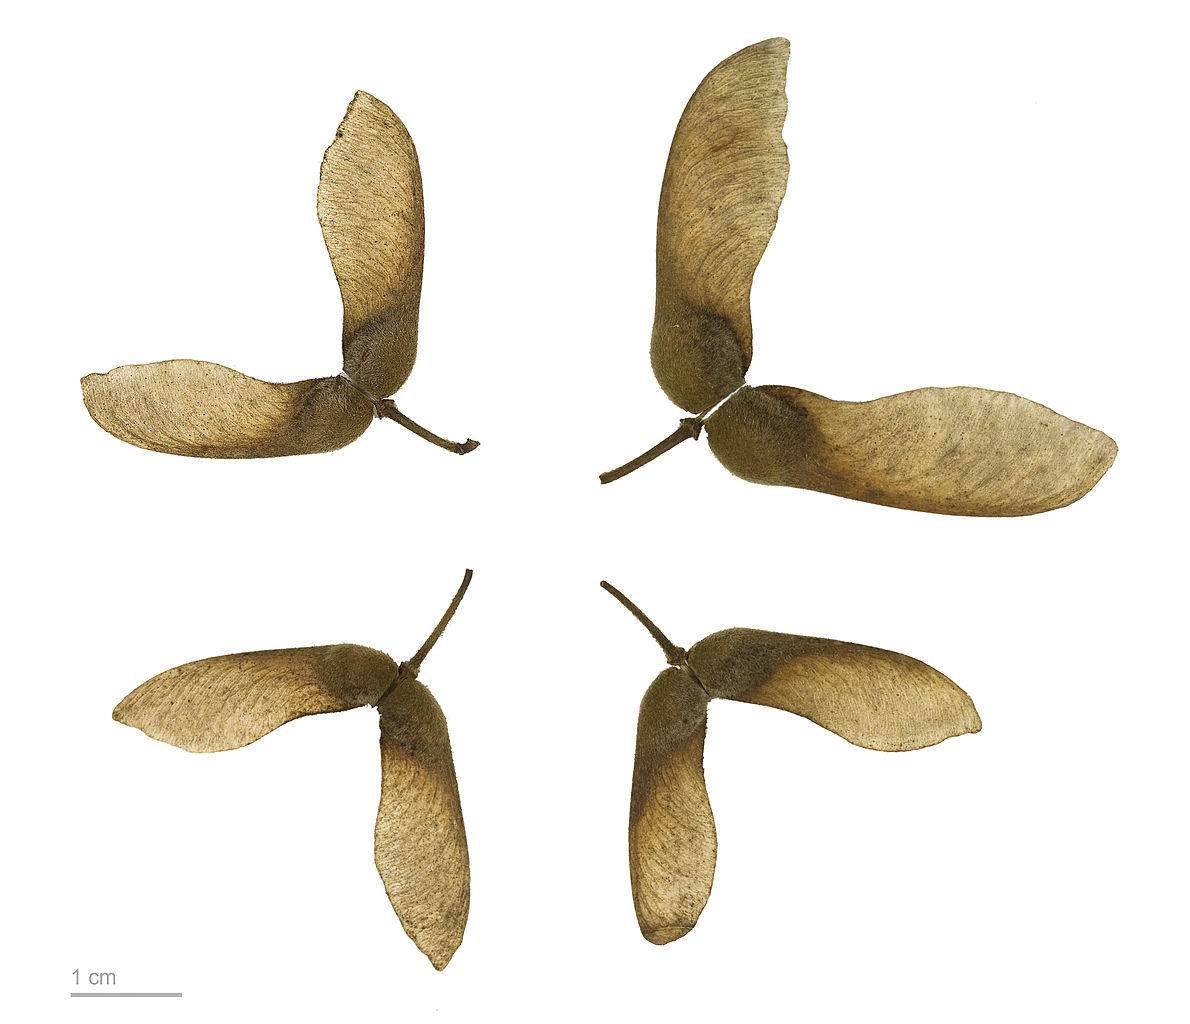 Maple tree seeds 